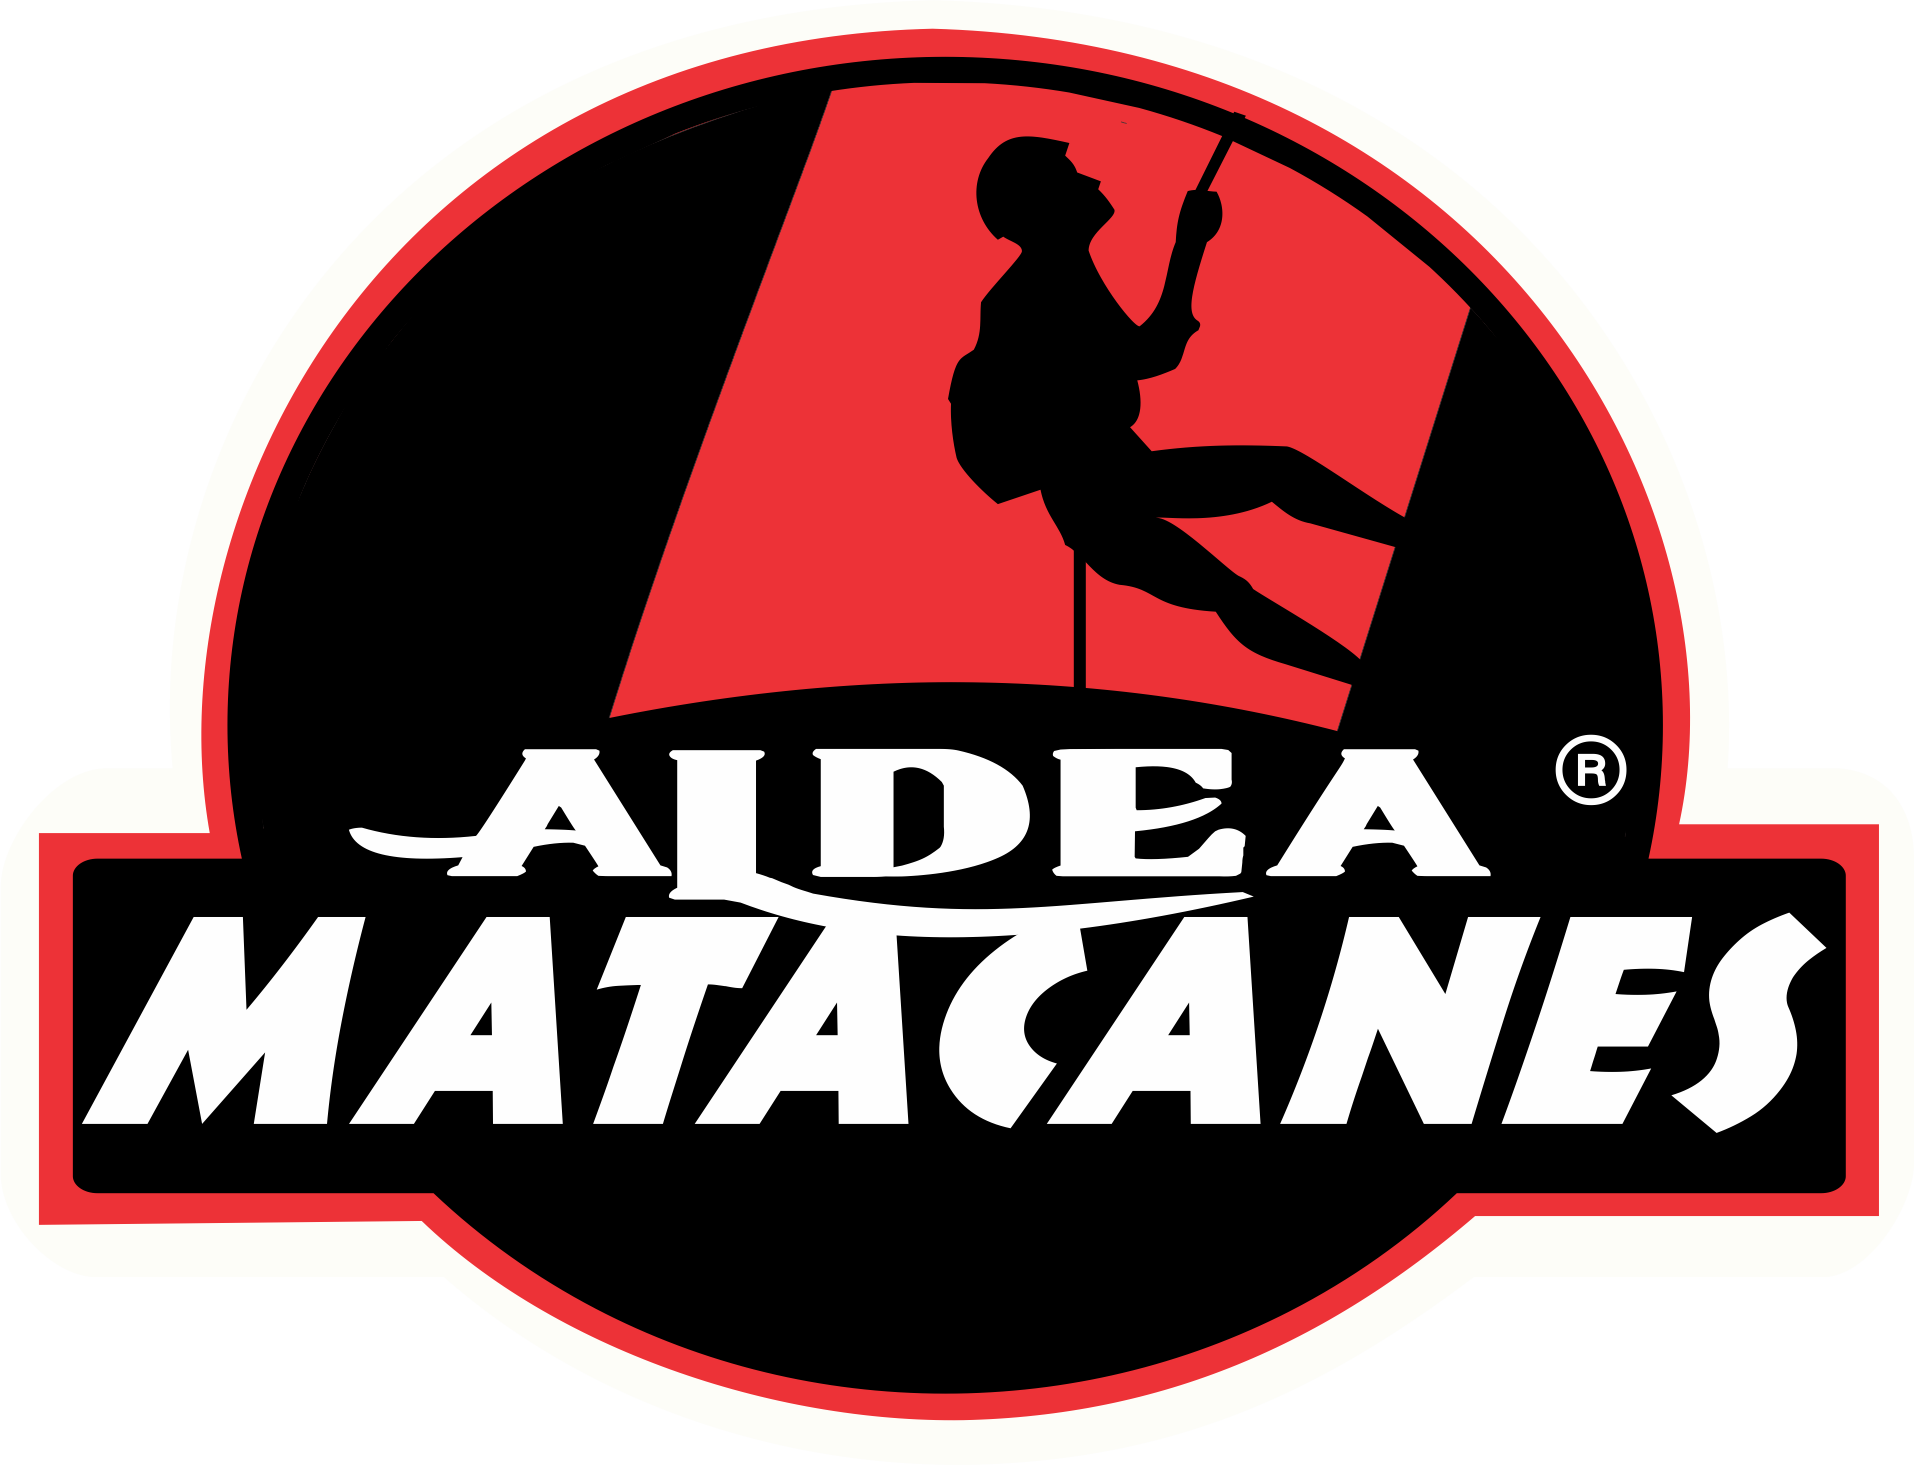 logo Aldea Matacanes